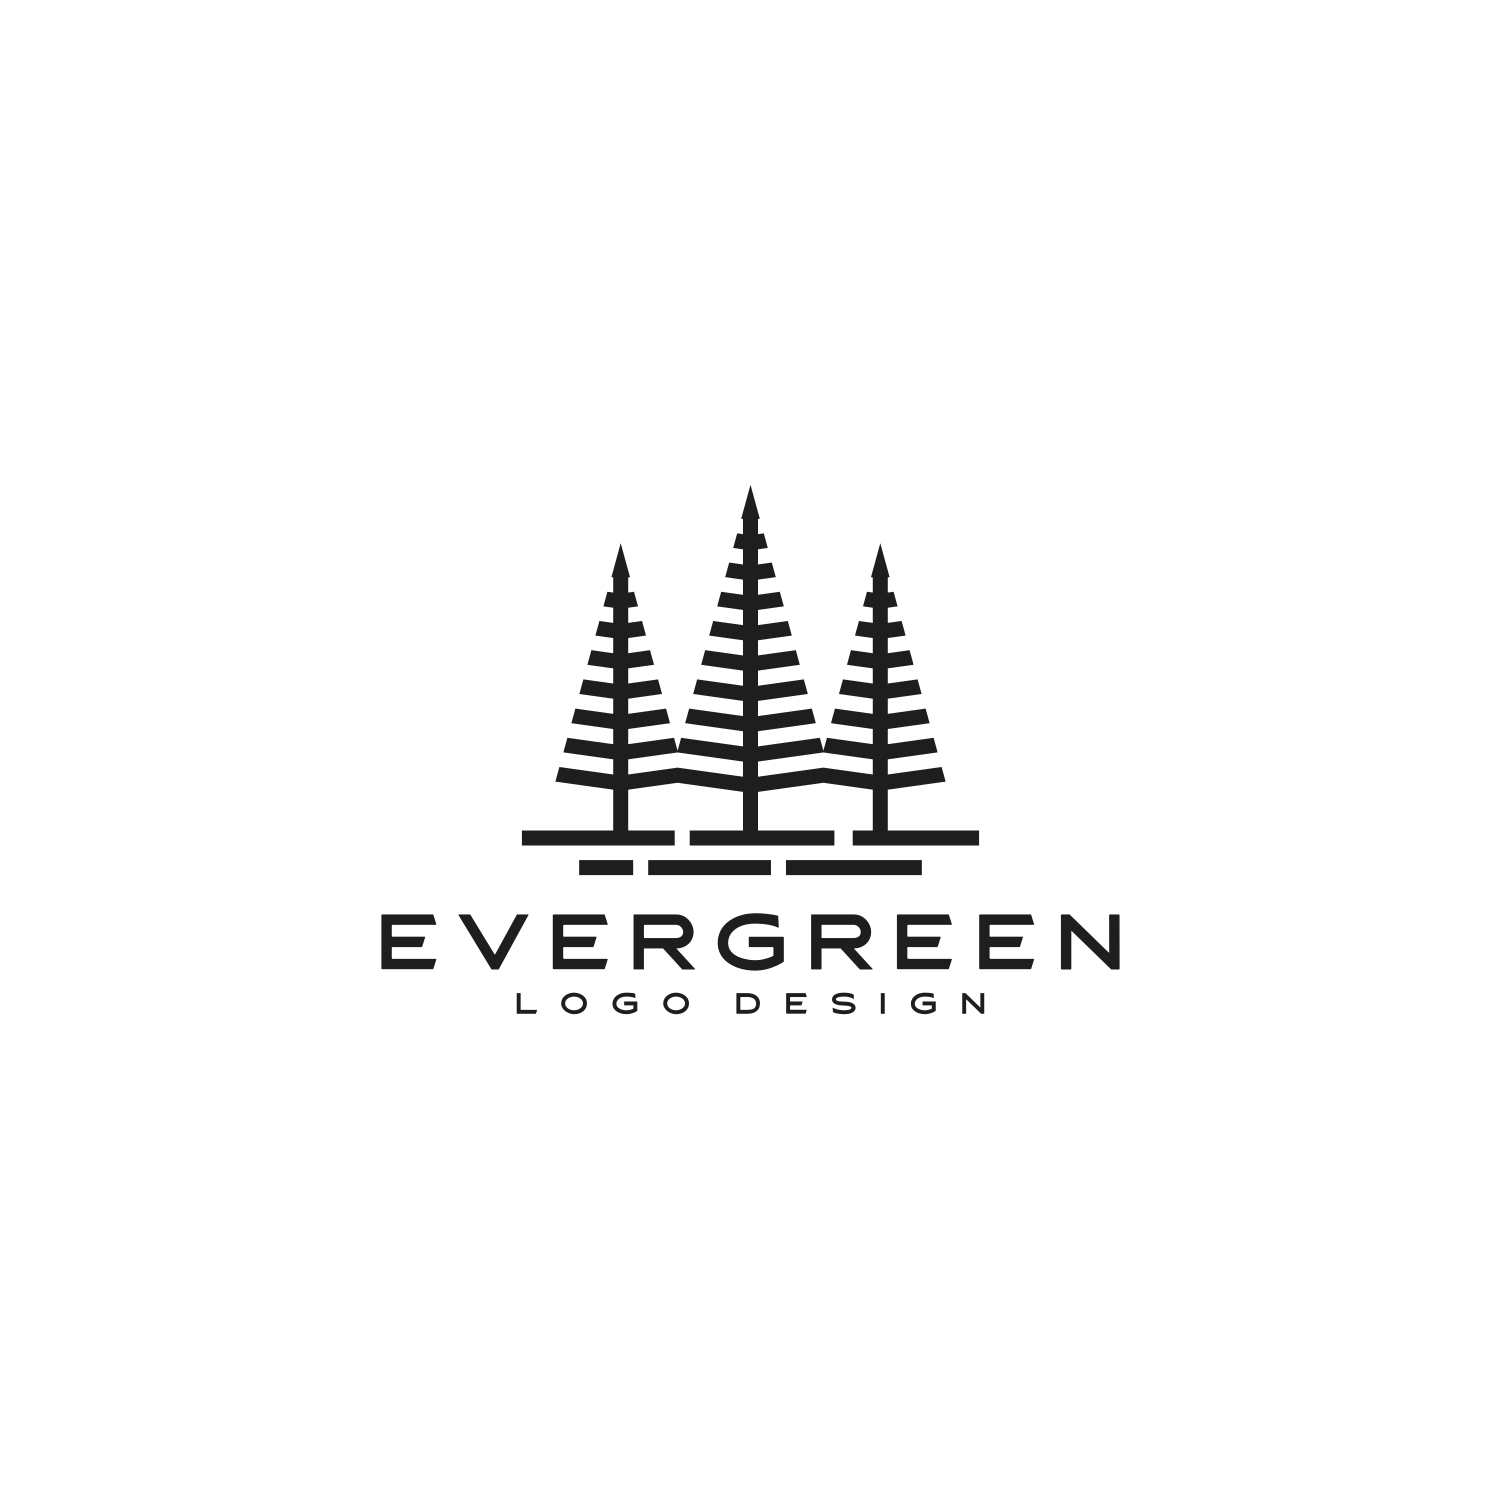 evergreen tree logo